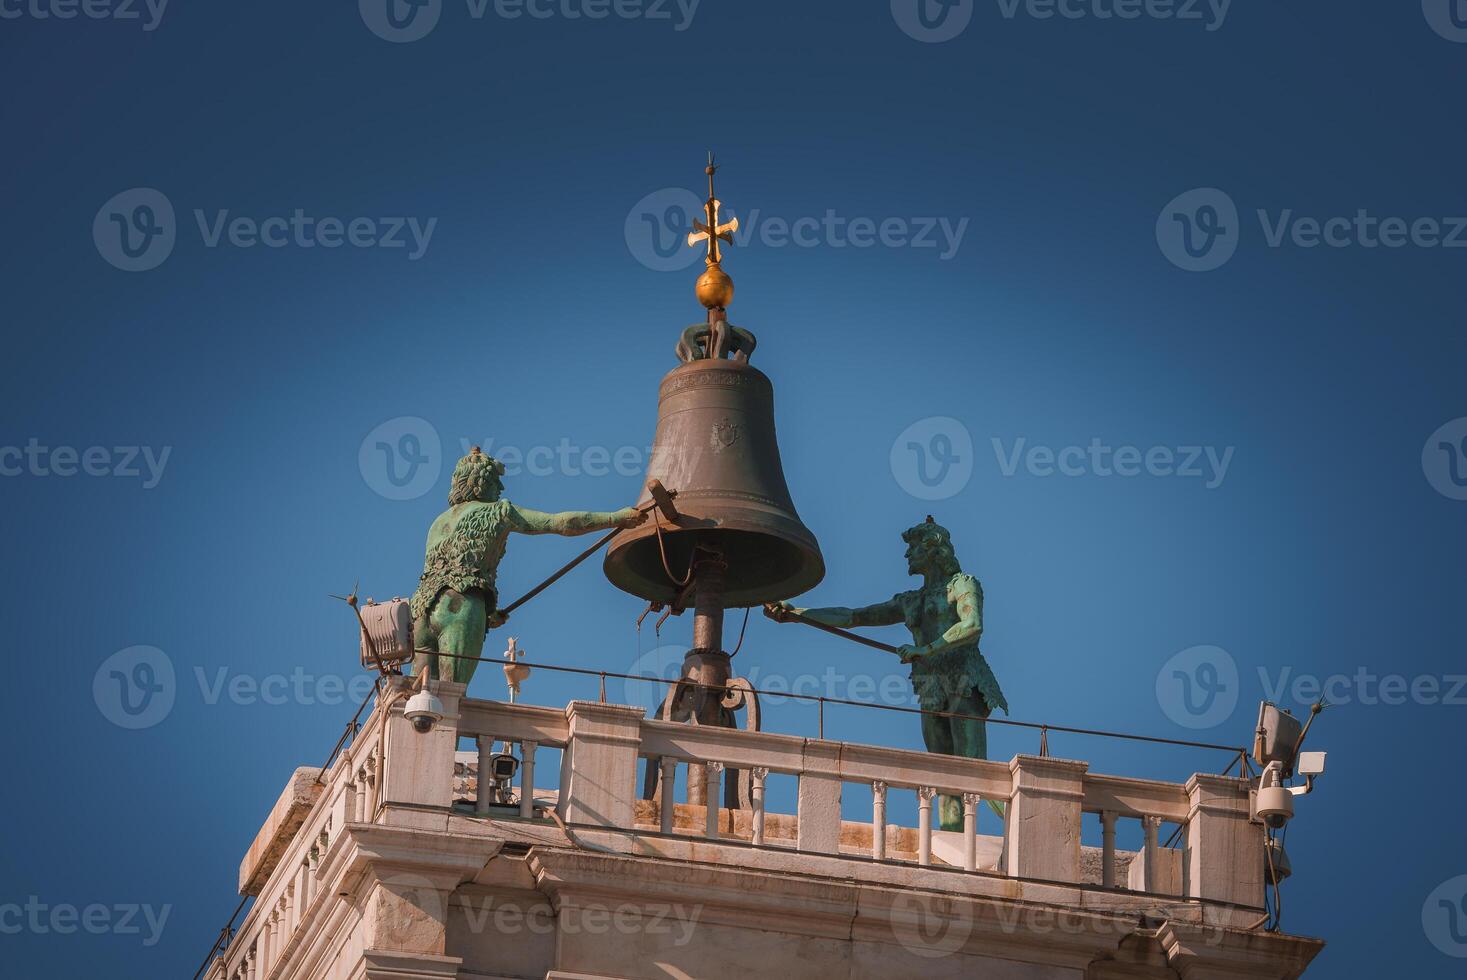 veneciano edificio con campana torre y estatuas en claro clima, Italia arquitectura fotografía foto